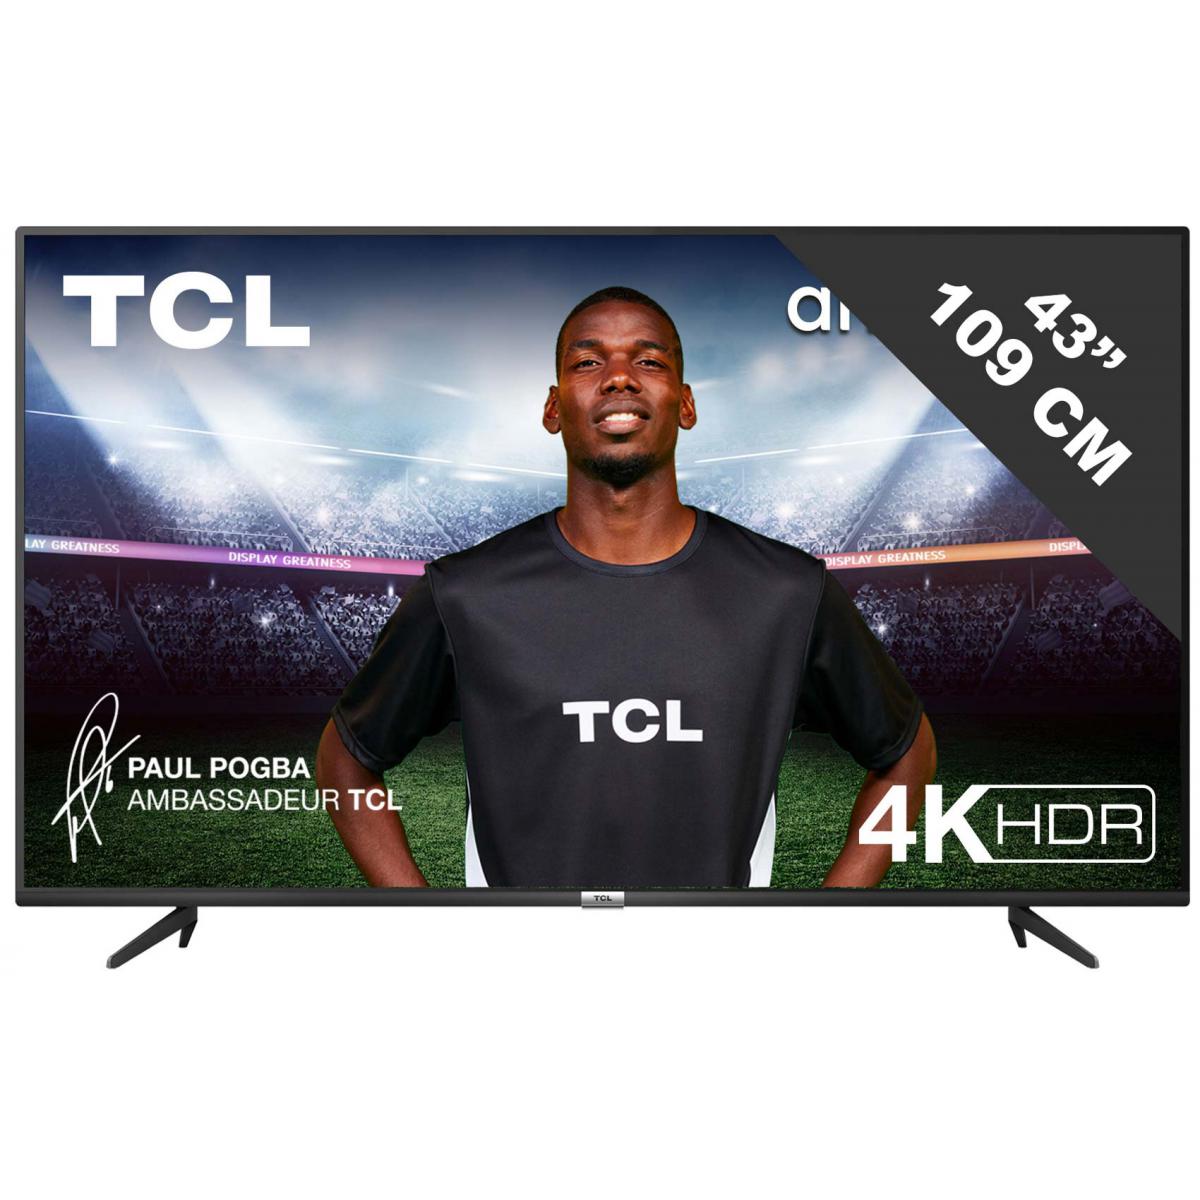 TCL - TV LED 4K 108 cm TV 43P615 4K HDR SMART ANDROID TV - TV 40'' à 43''